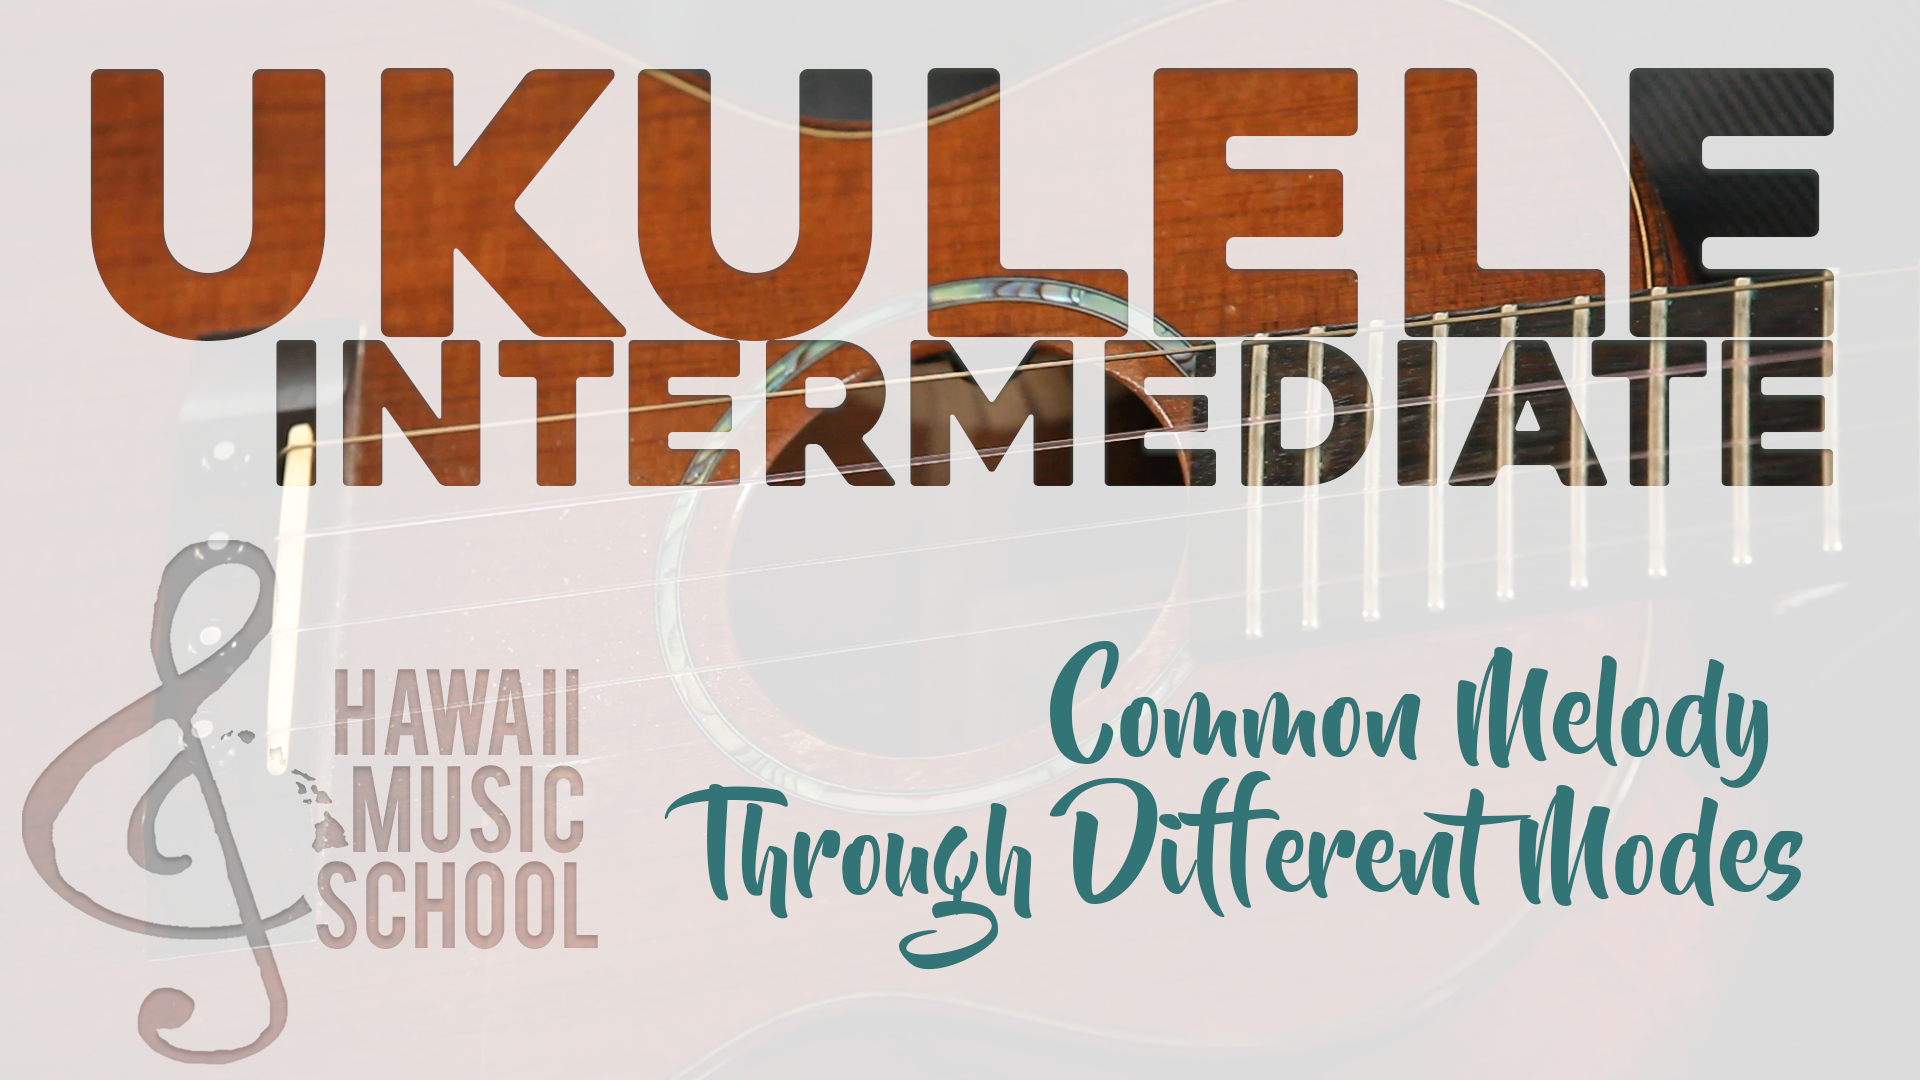 hawaii music school